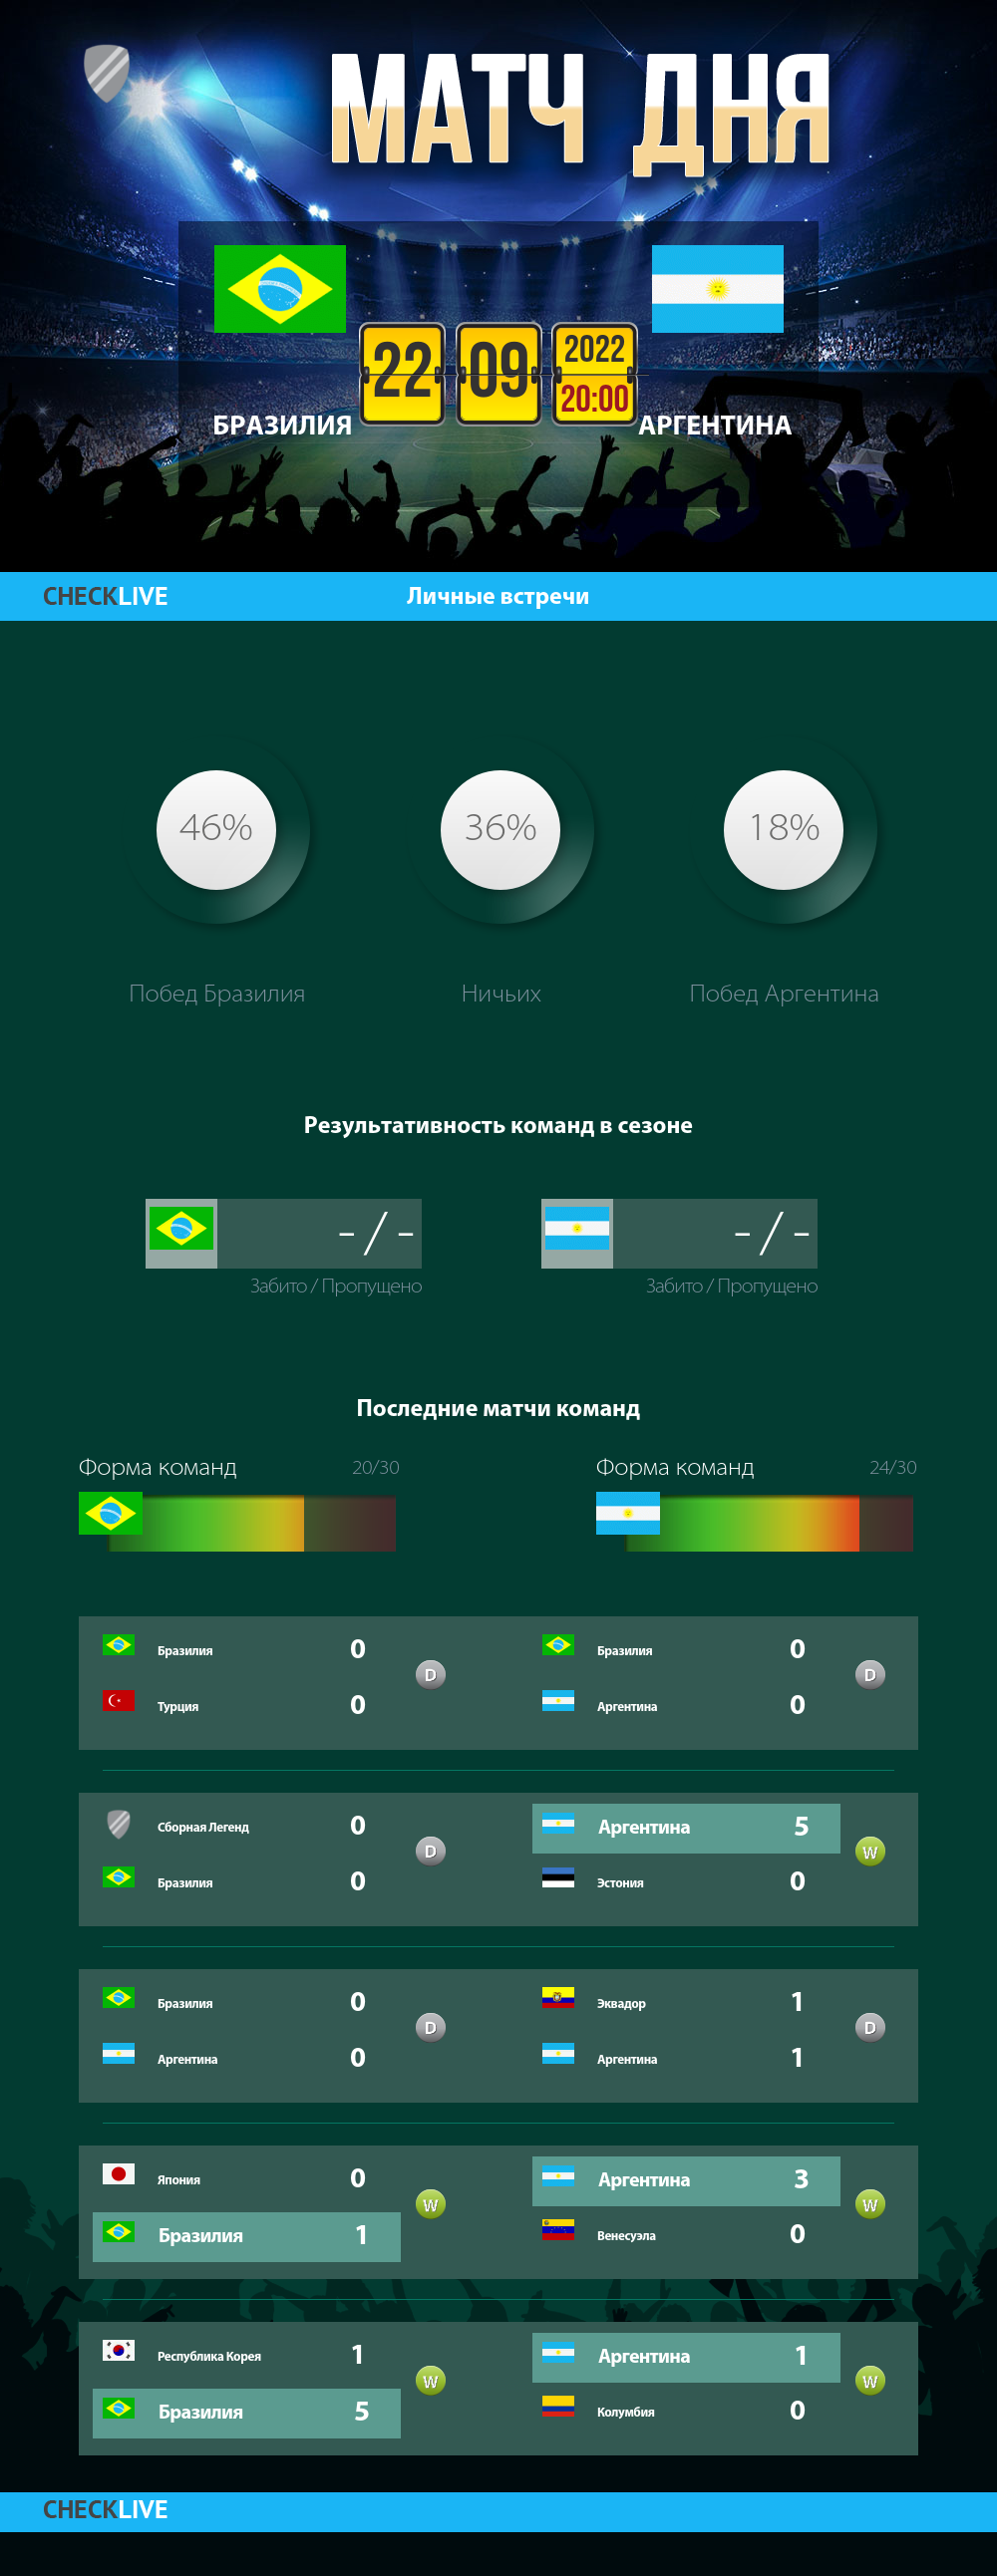 Инфографика Бразилия и Аргентина матч дня 22.09.2022